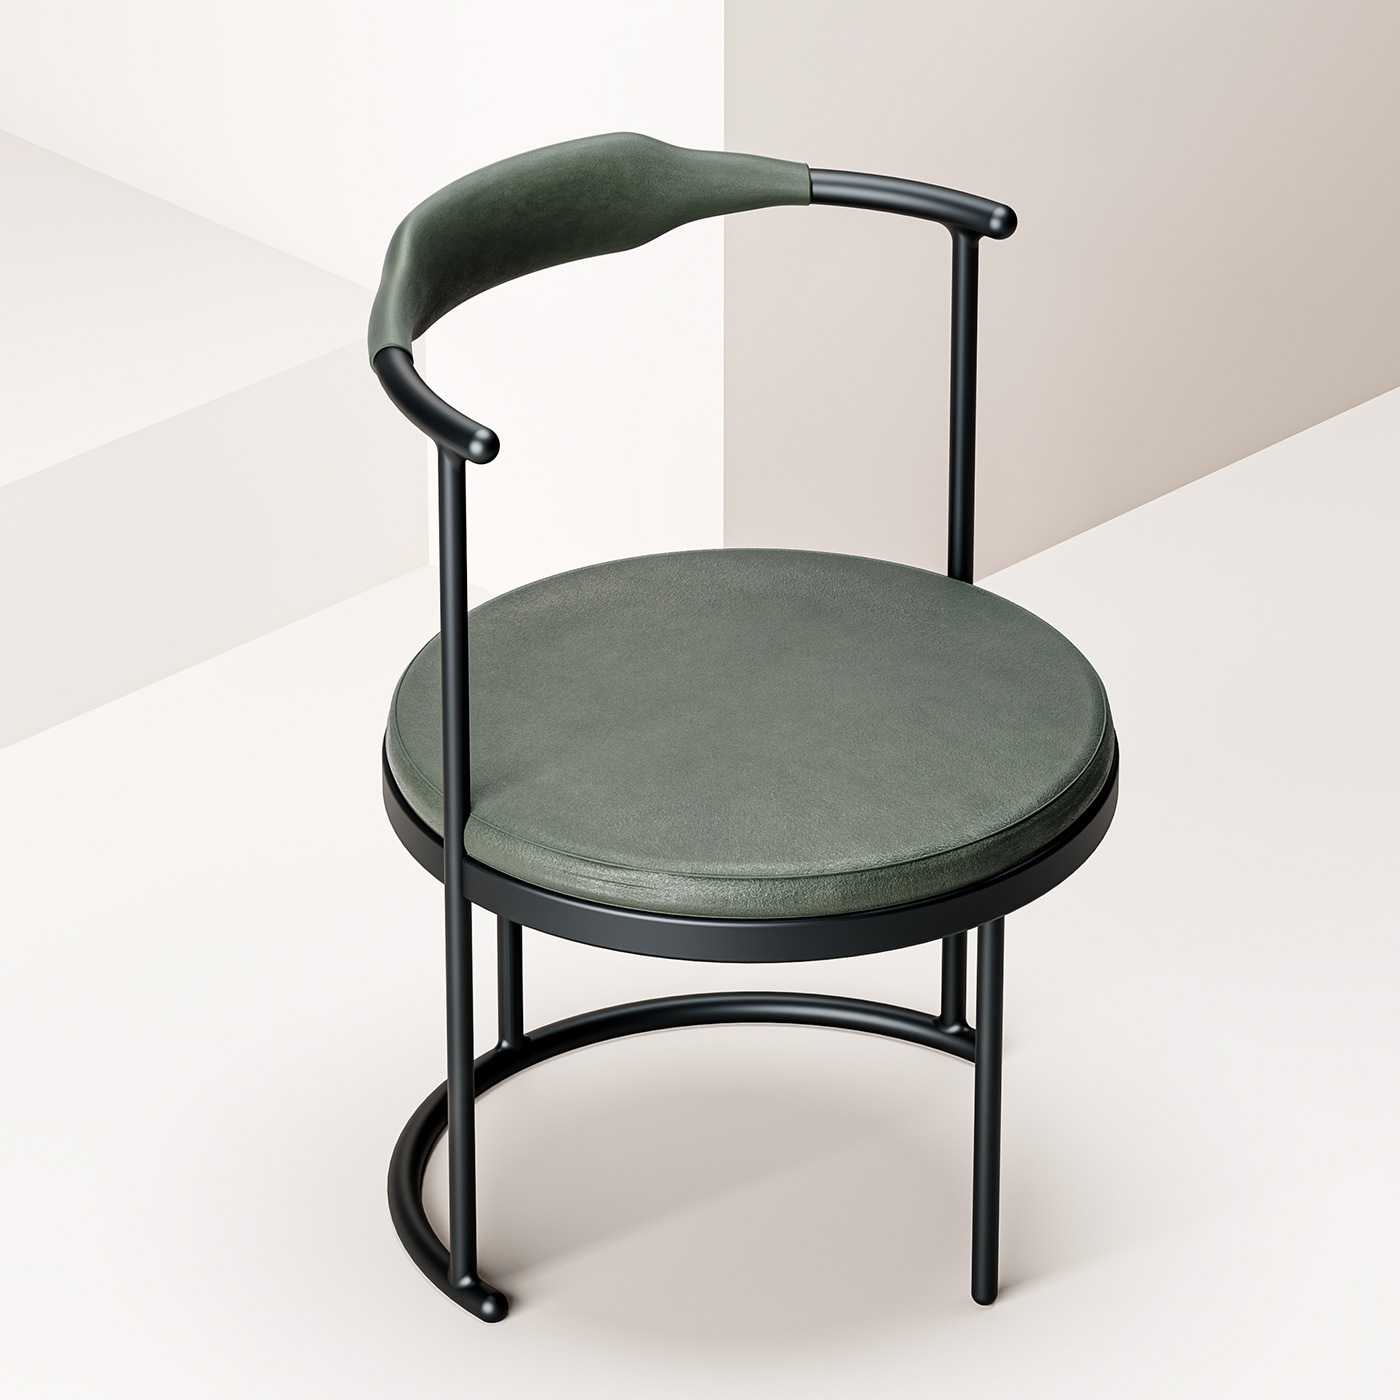 furniture product design chair Interior seating furniture design  classic furniture inspiration chair design